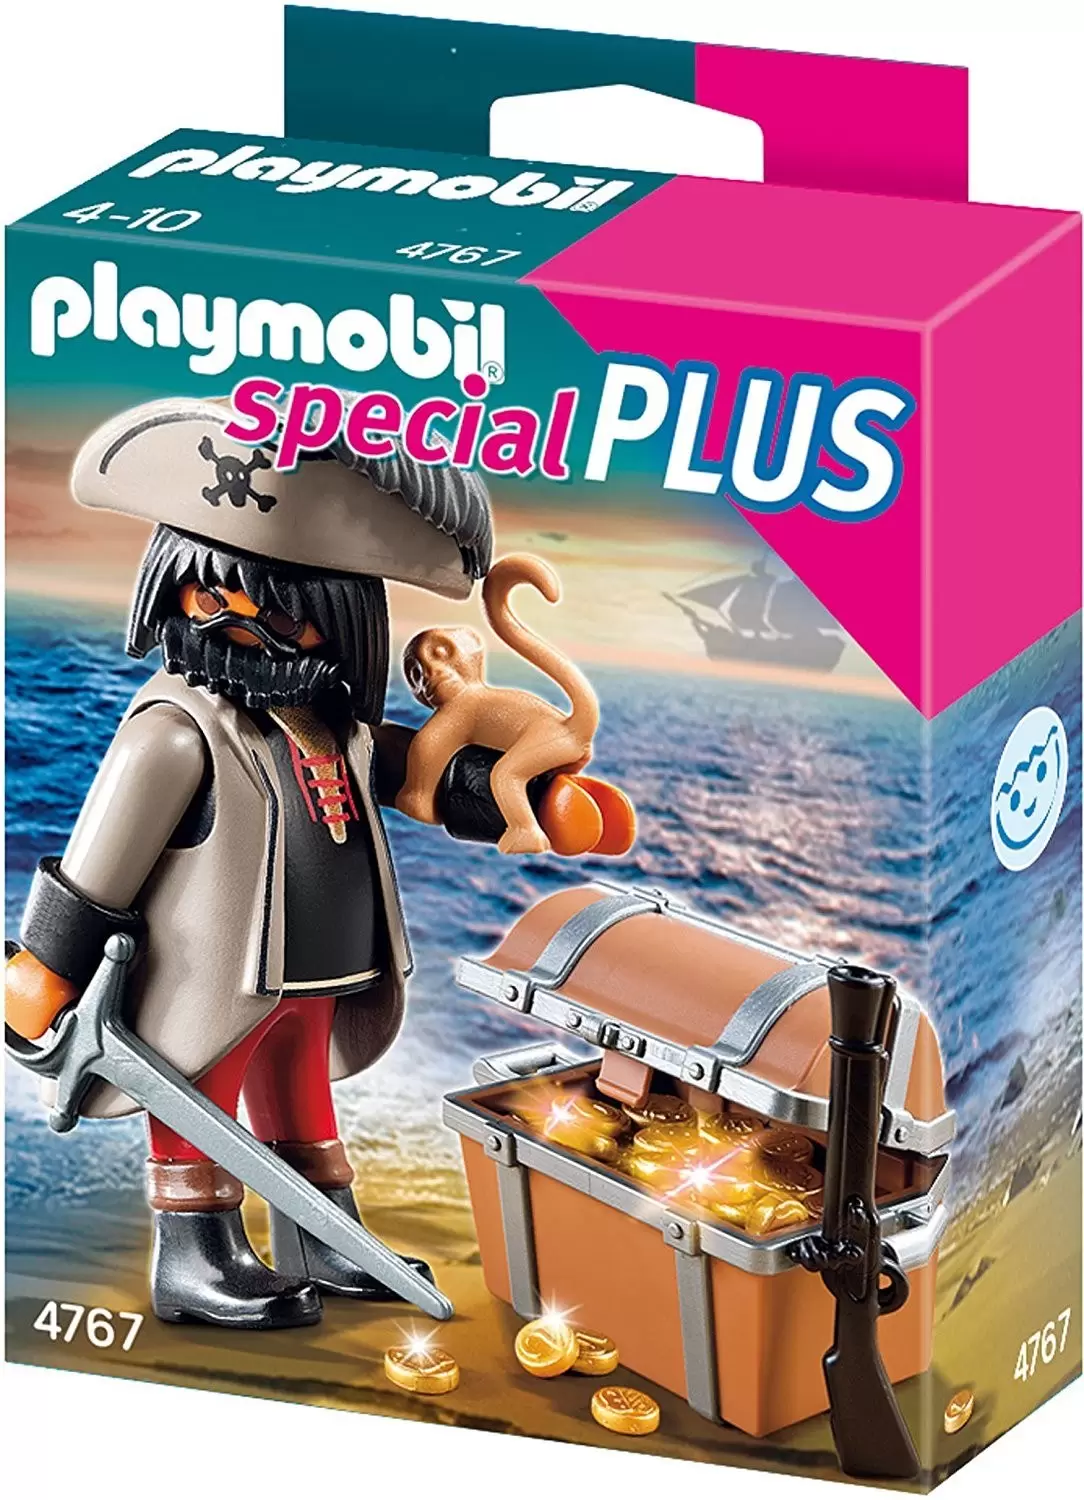 Playmobil SpecialPlus - Pirate with Treasure